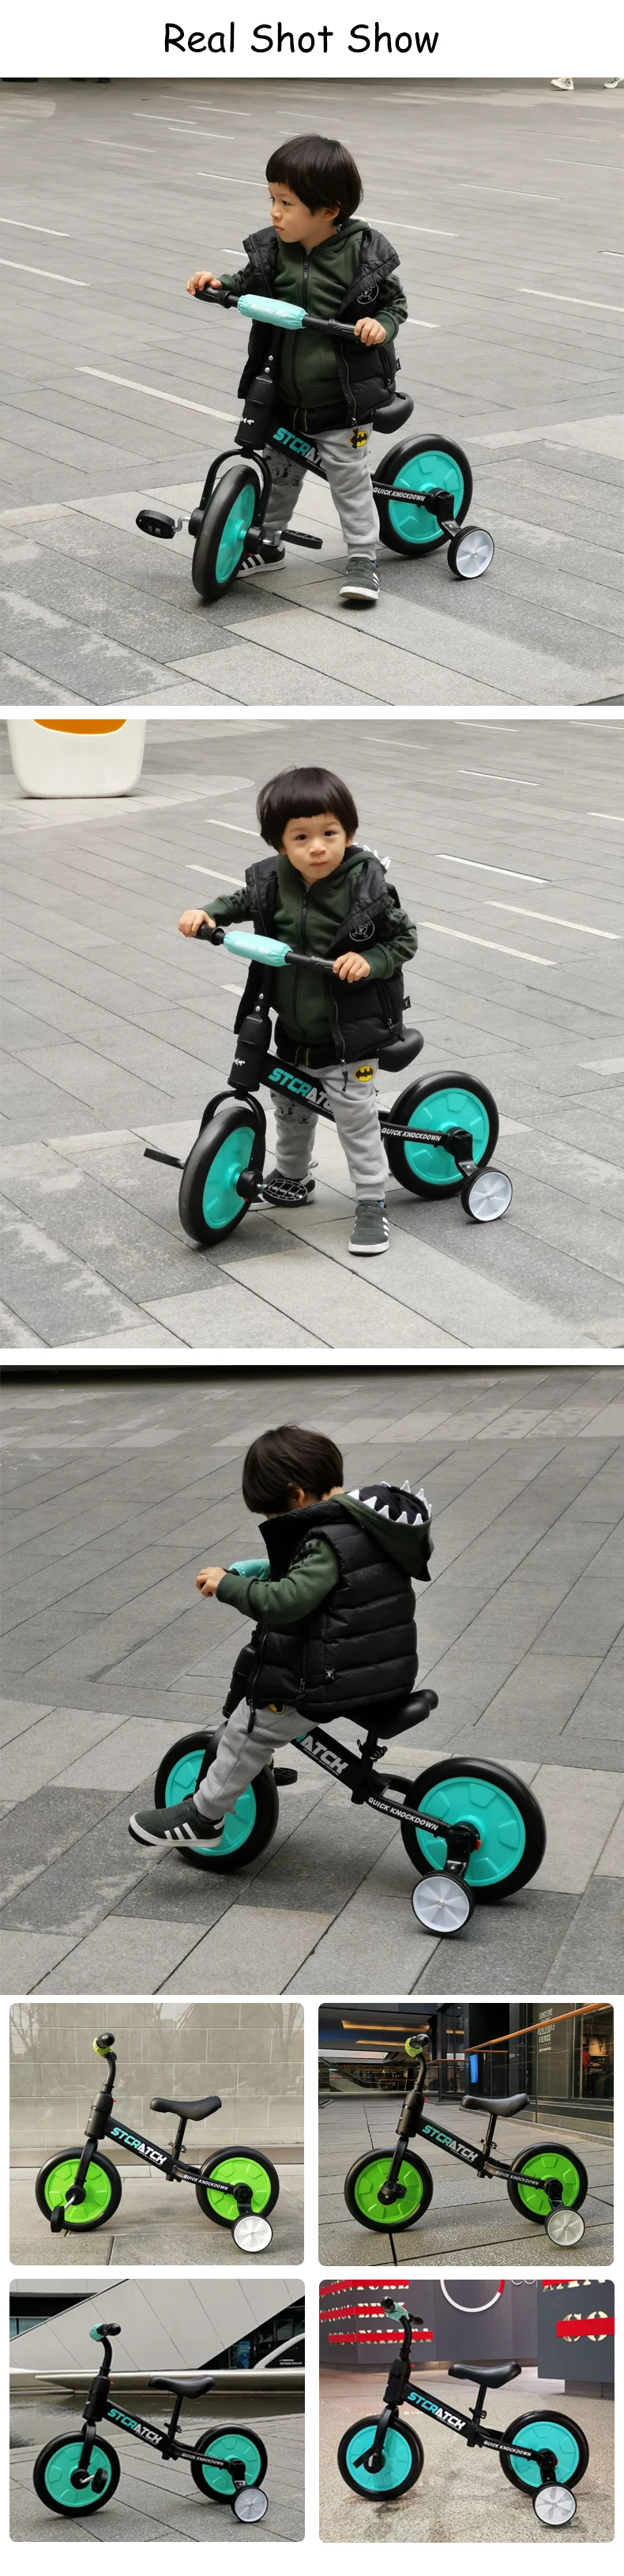 Детский Сияющий детский балансировочный велосипед, детские игрушки, ходунки, 2/4 колеса, регулировка велосипеда, легкий костюм для детей от 2 до 6 лет, подарок